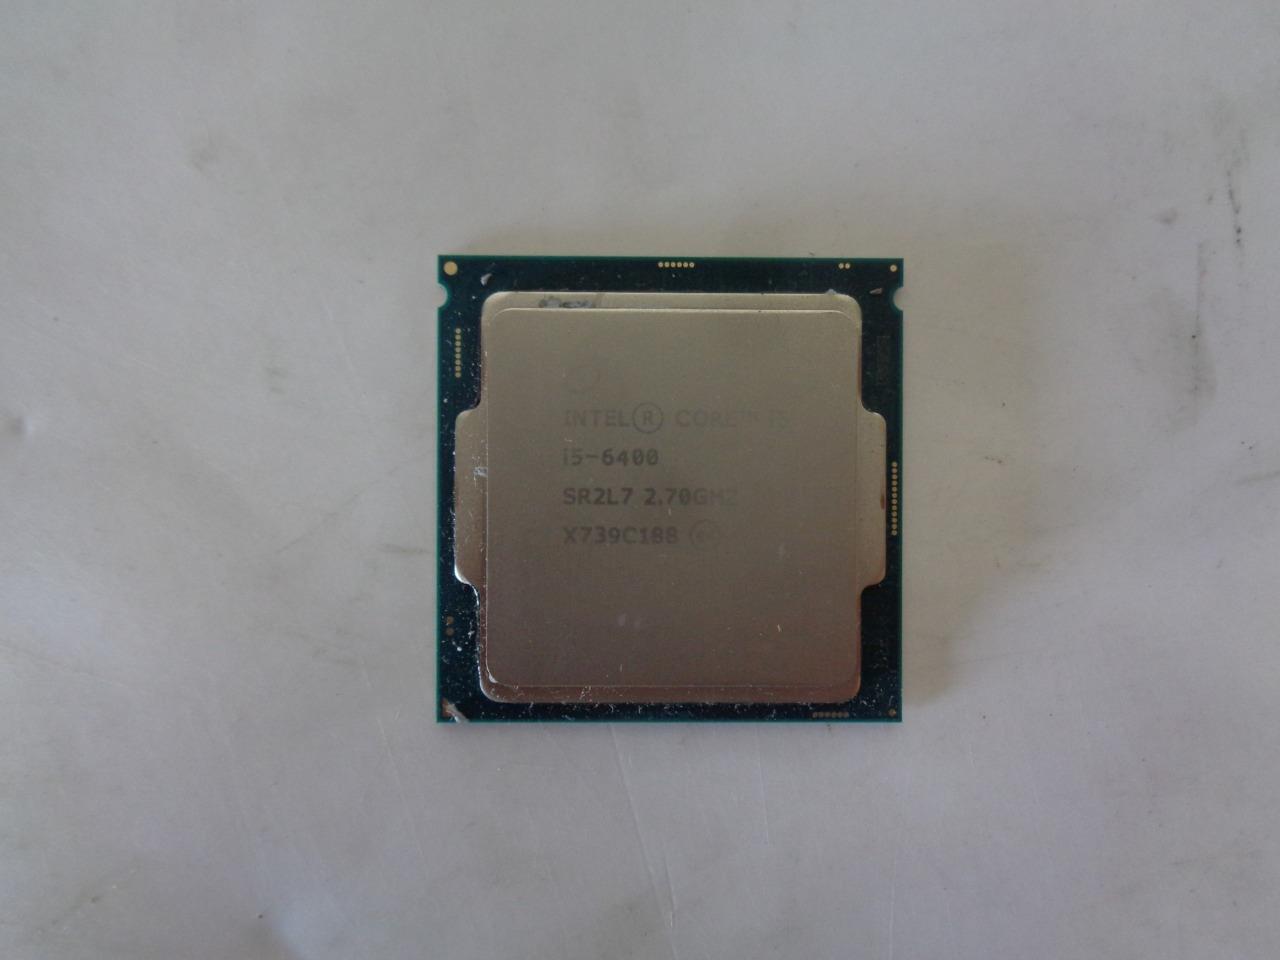 Intel SR2L7 Core i5-6400 2.70GHz 4-Core 6MB LGA1151 CPU Processor (A3473)